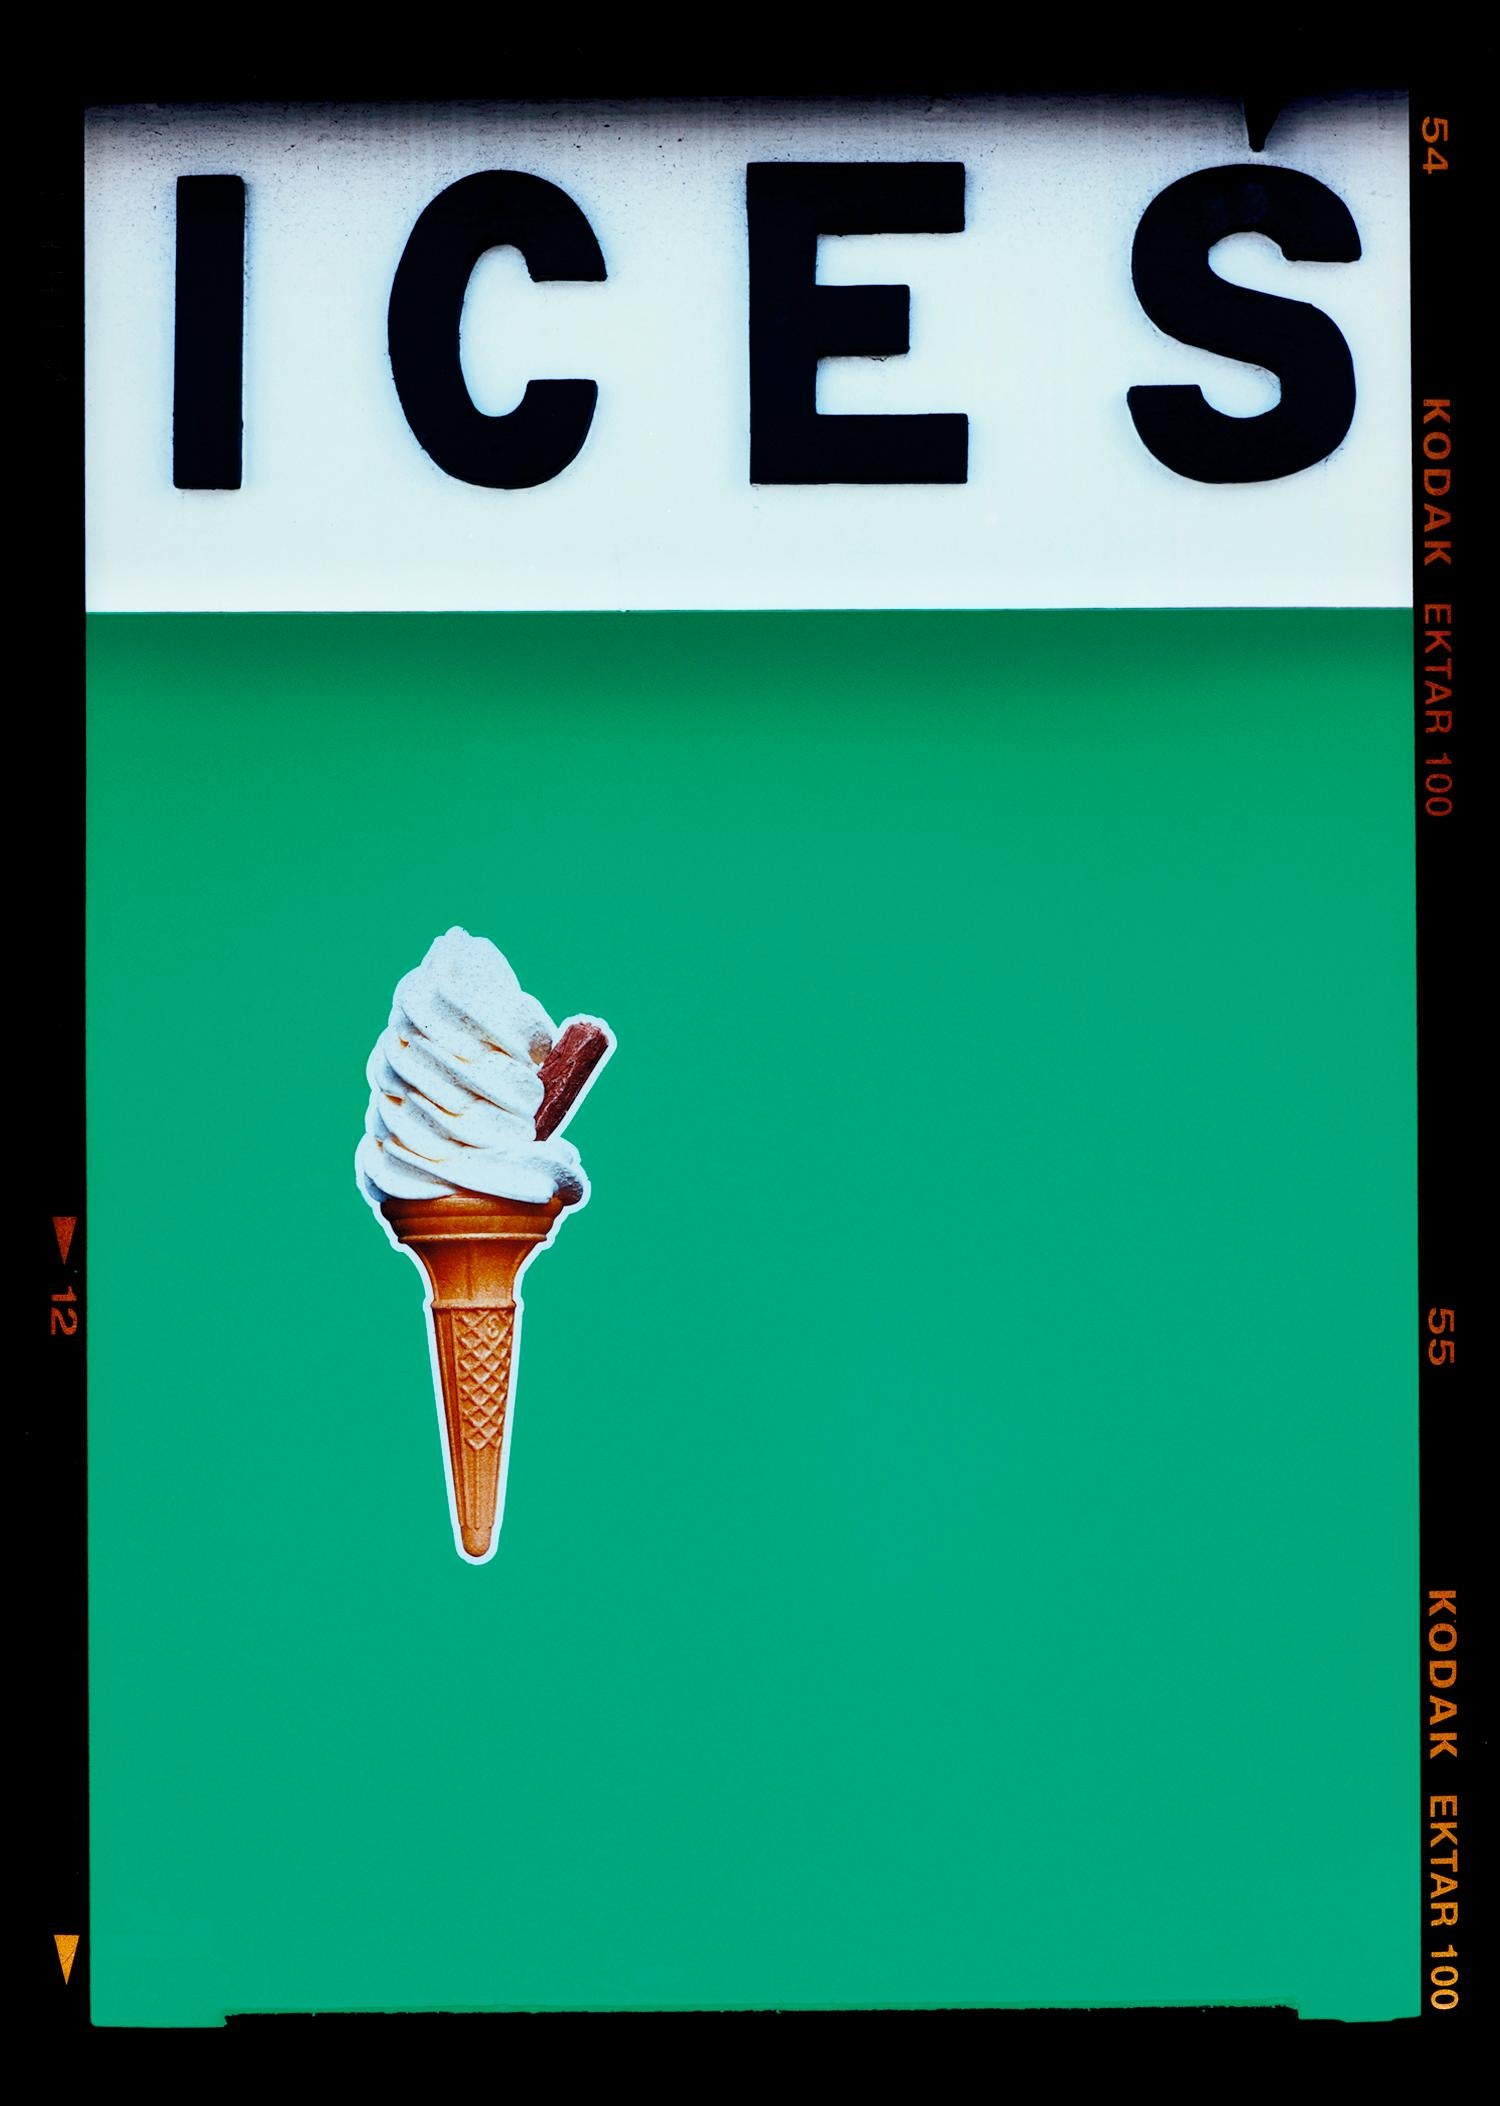 Richard Heeps Print – ICES (Viridian Green), Bexhill-on-Sea – britische Farbfotografie am Meer